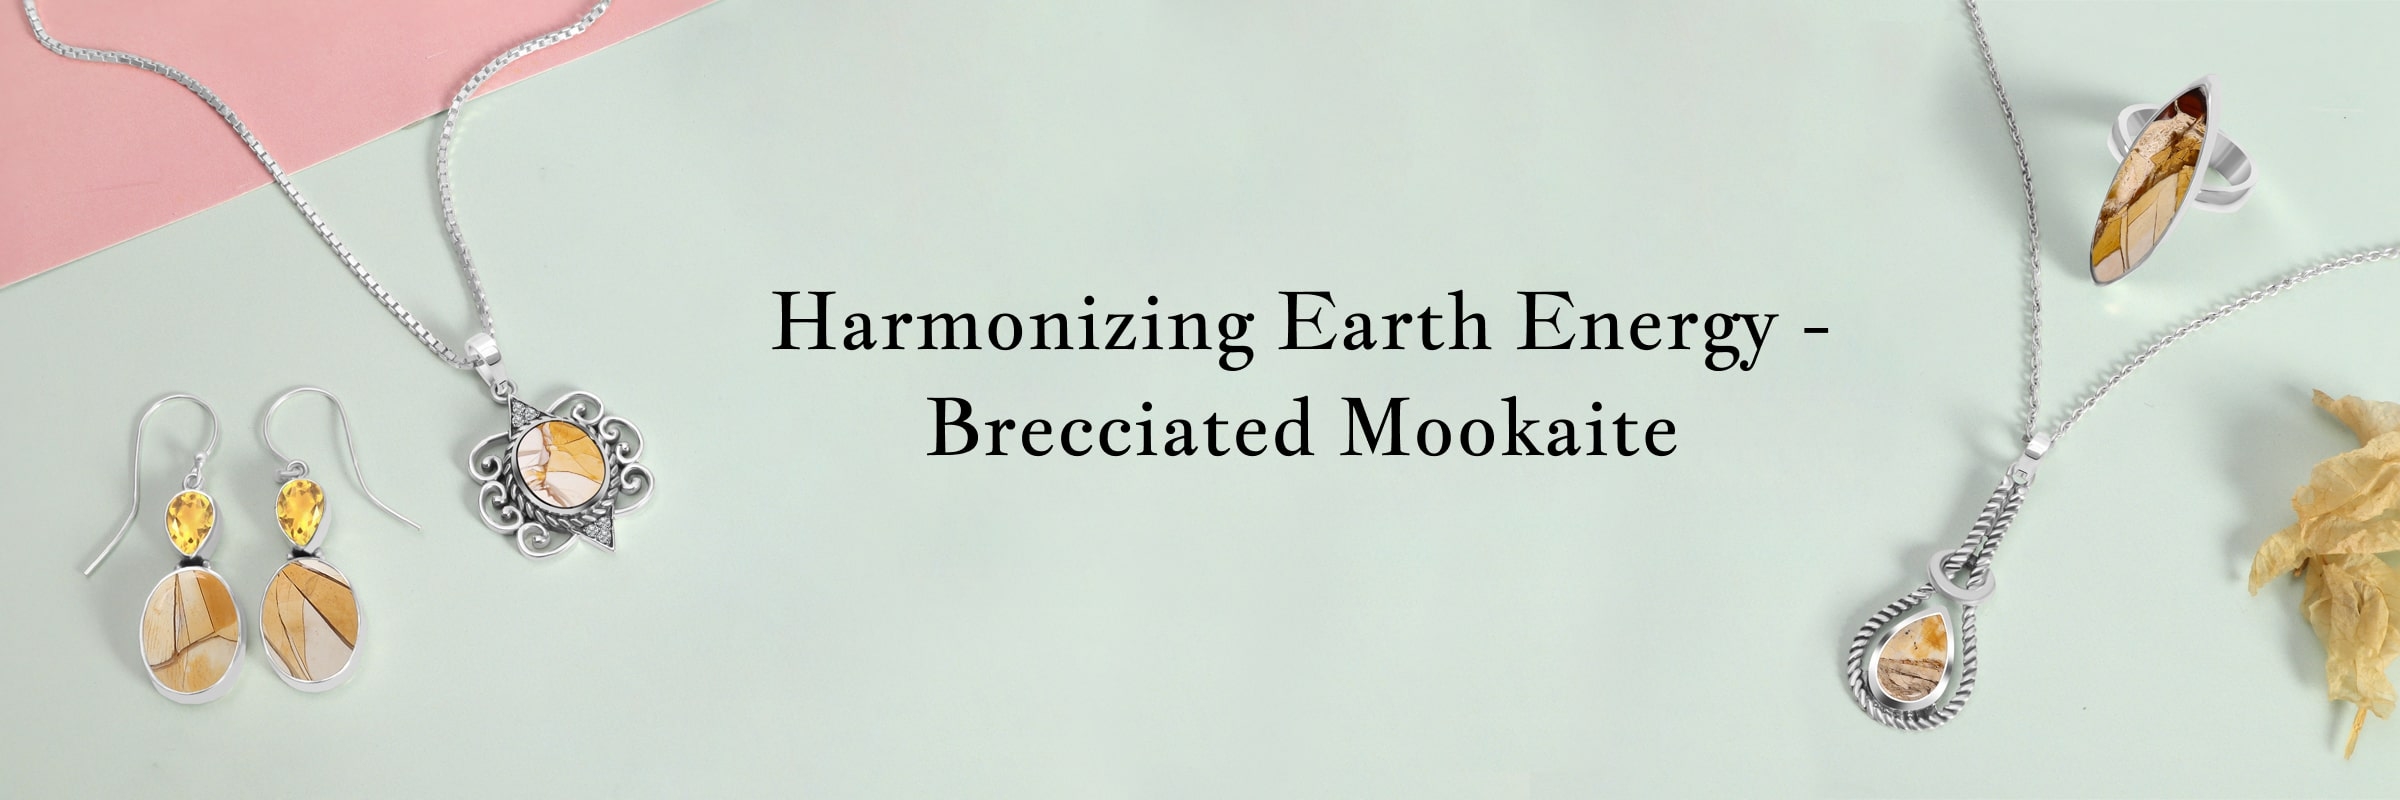 Brecciated Mookaite Healing Properties